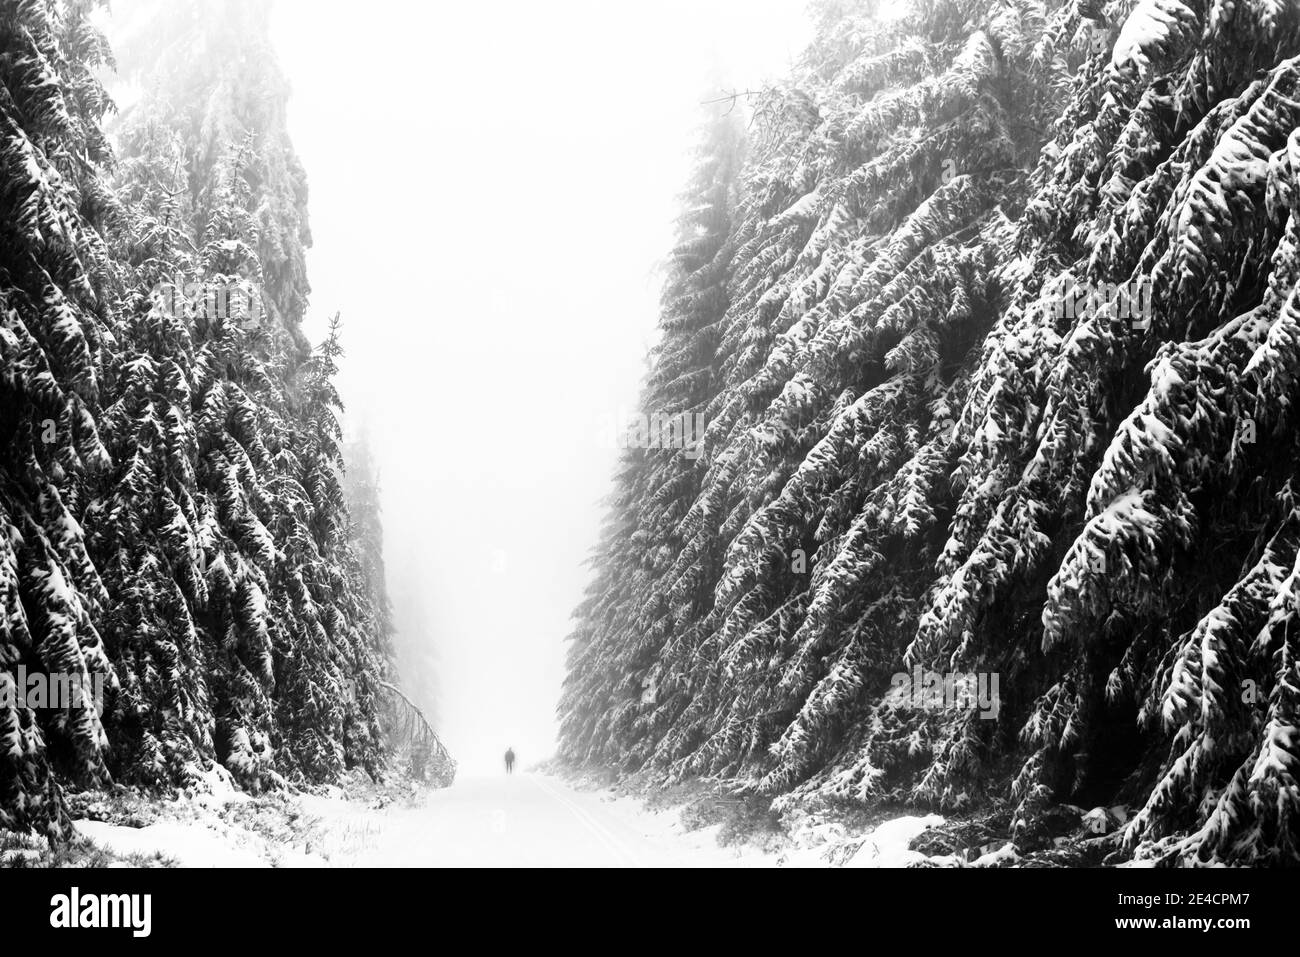 Allemagne, Bade-Wurtemberg, Forêt Noire, Kaltenbronn, ski de fond sur piste dans la forêt de sapins enneigée Banque D'Images